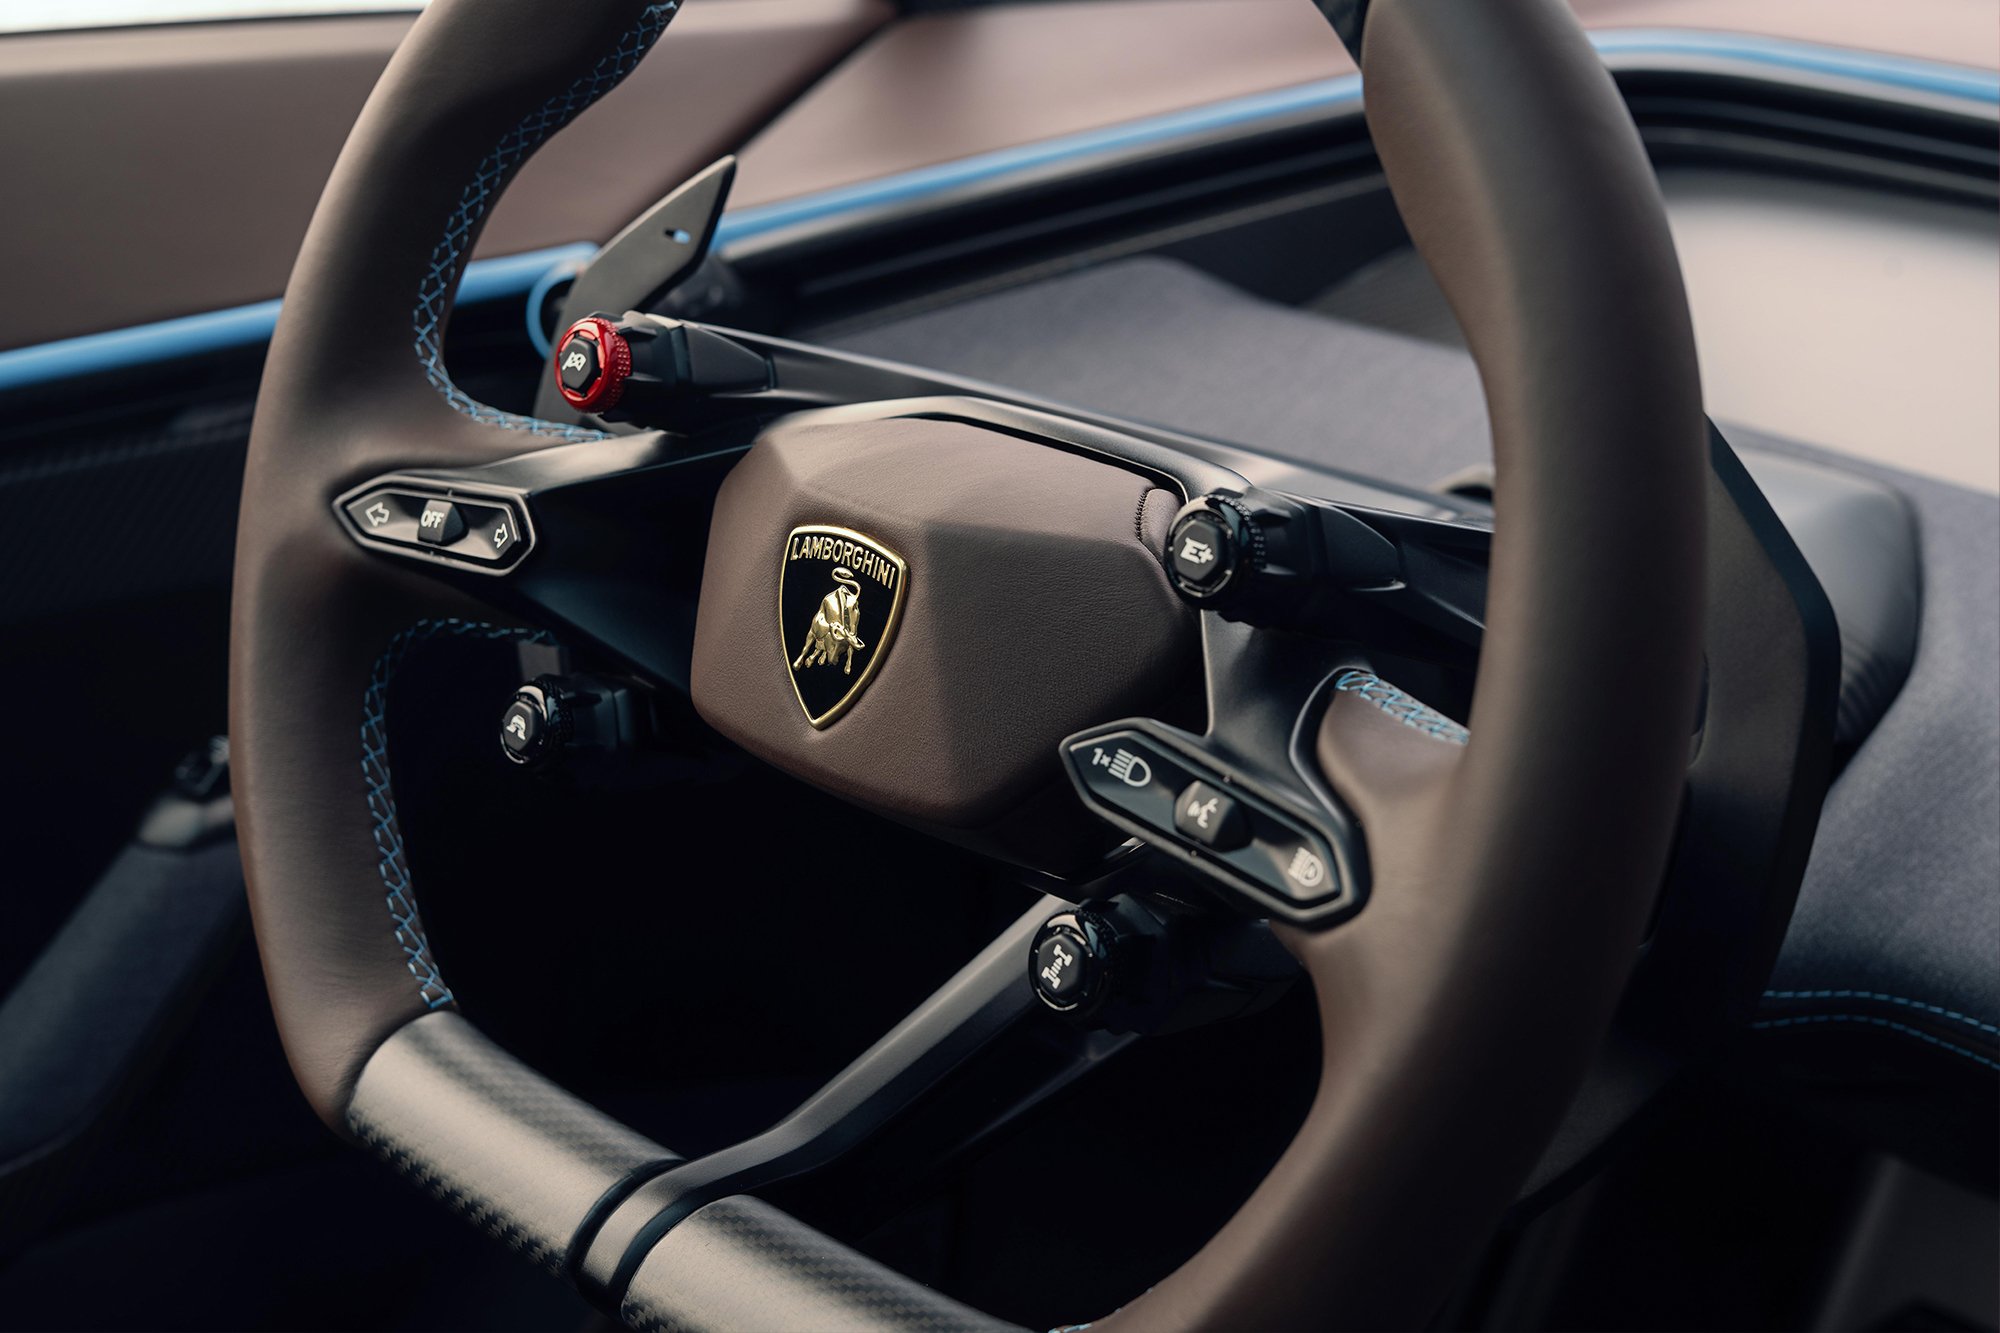 The interior design of the Lamborghini Lanzador